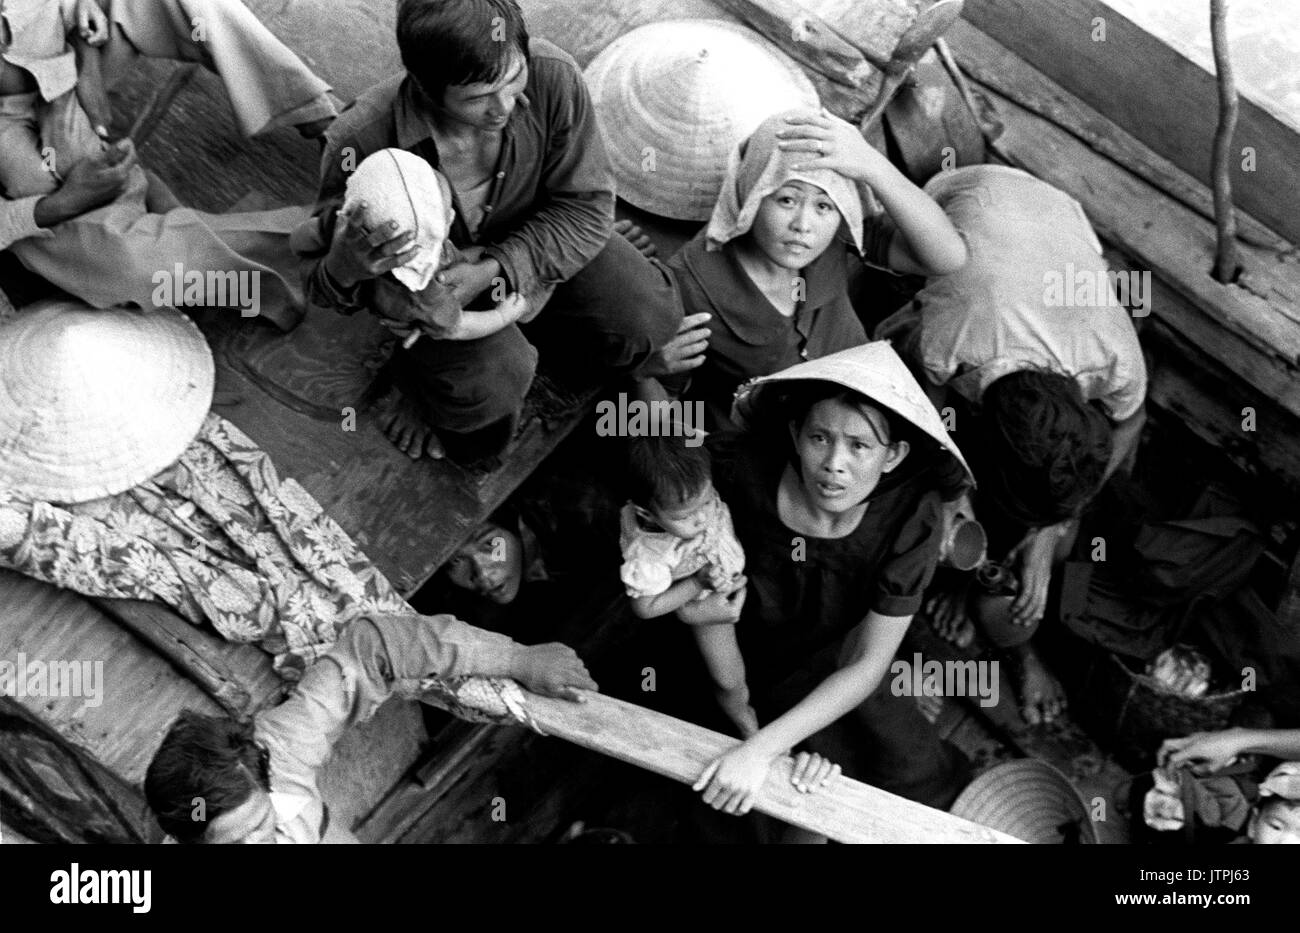 Vietnamesische Flüchtlinge warten an Bord der amphibischen Kommando Schiff USS BLUE RIDGE (LCC 19) berücksichtigt werden. Die 35 refugeees wurden gerettet aus einem 35-Fuß-Boot, 350 Meilen nordöstlich von Cam Ranh Bay, Vietnam, nachdem wir vorher acht Tage auf See. Stockfoto